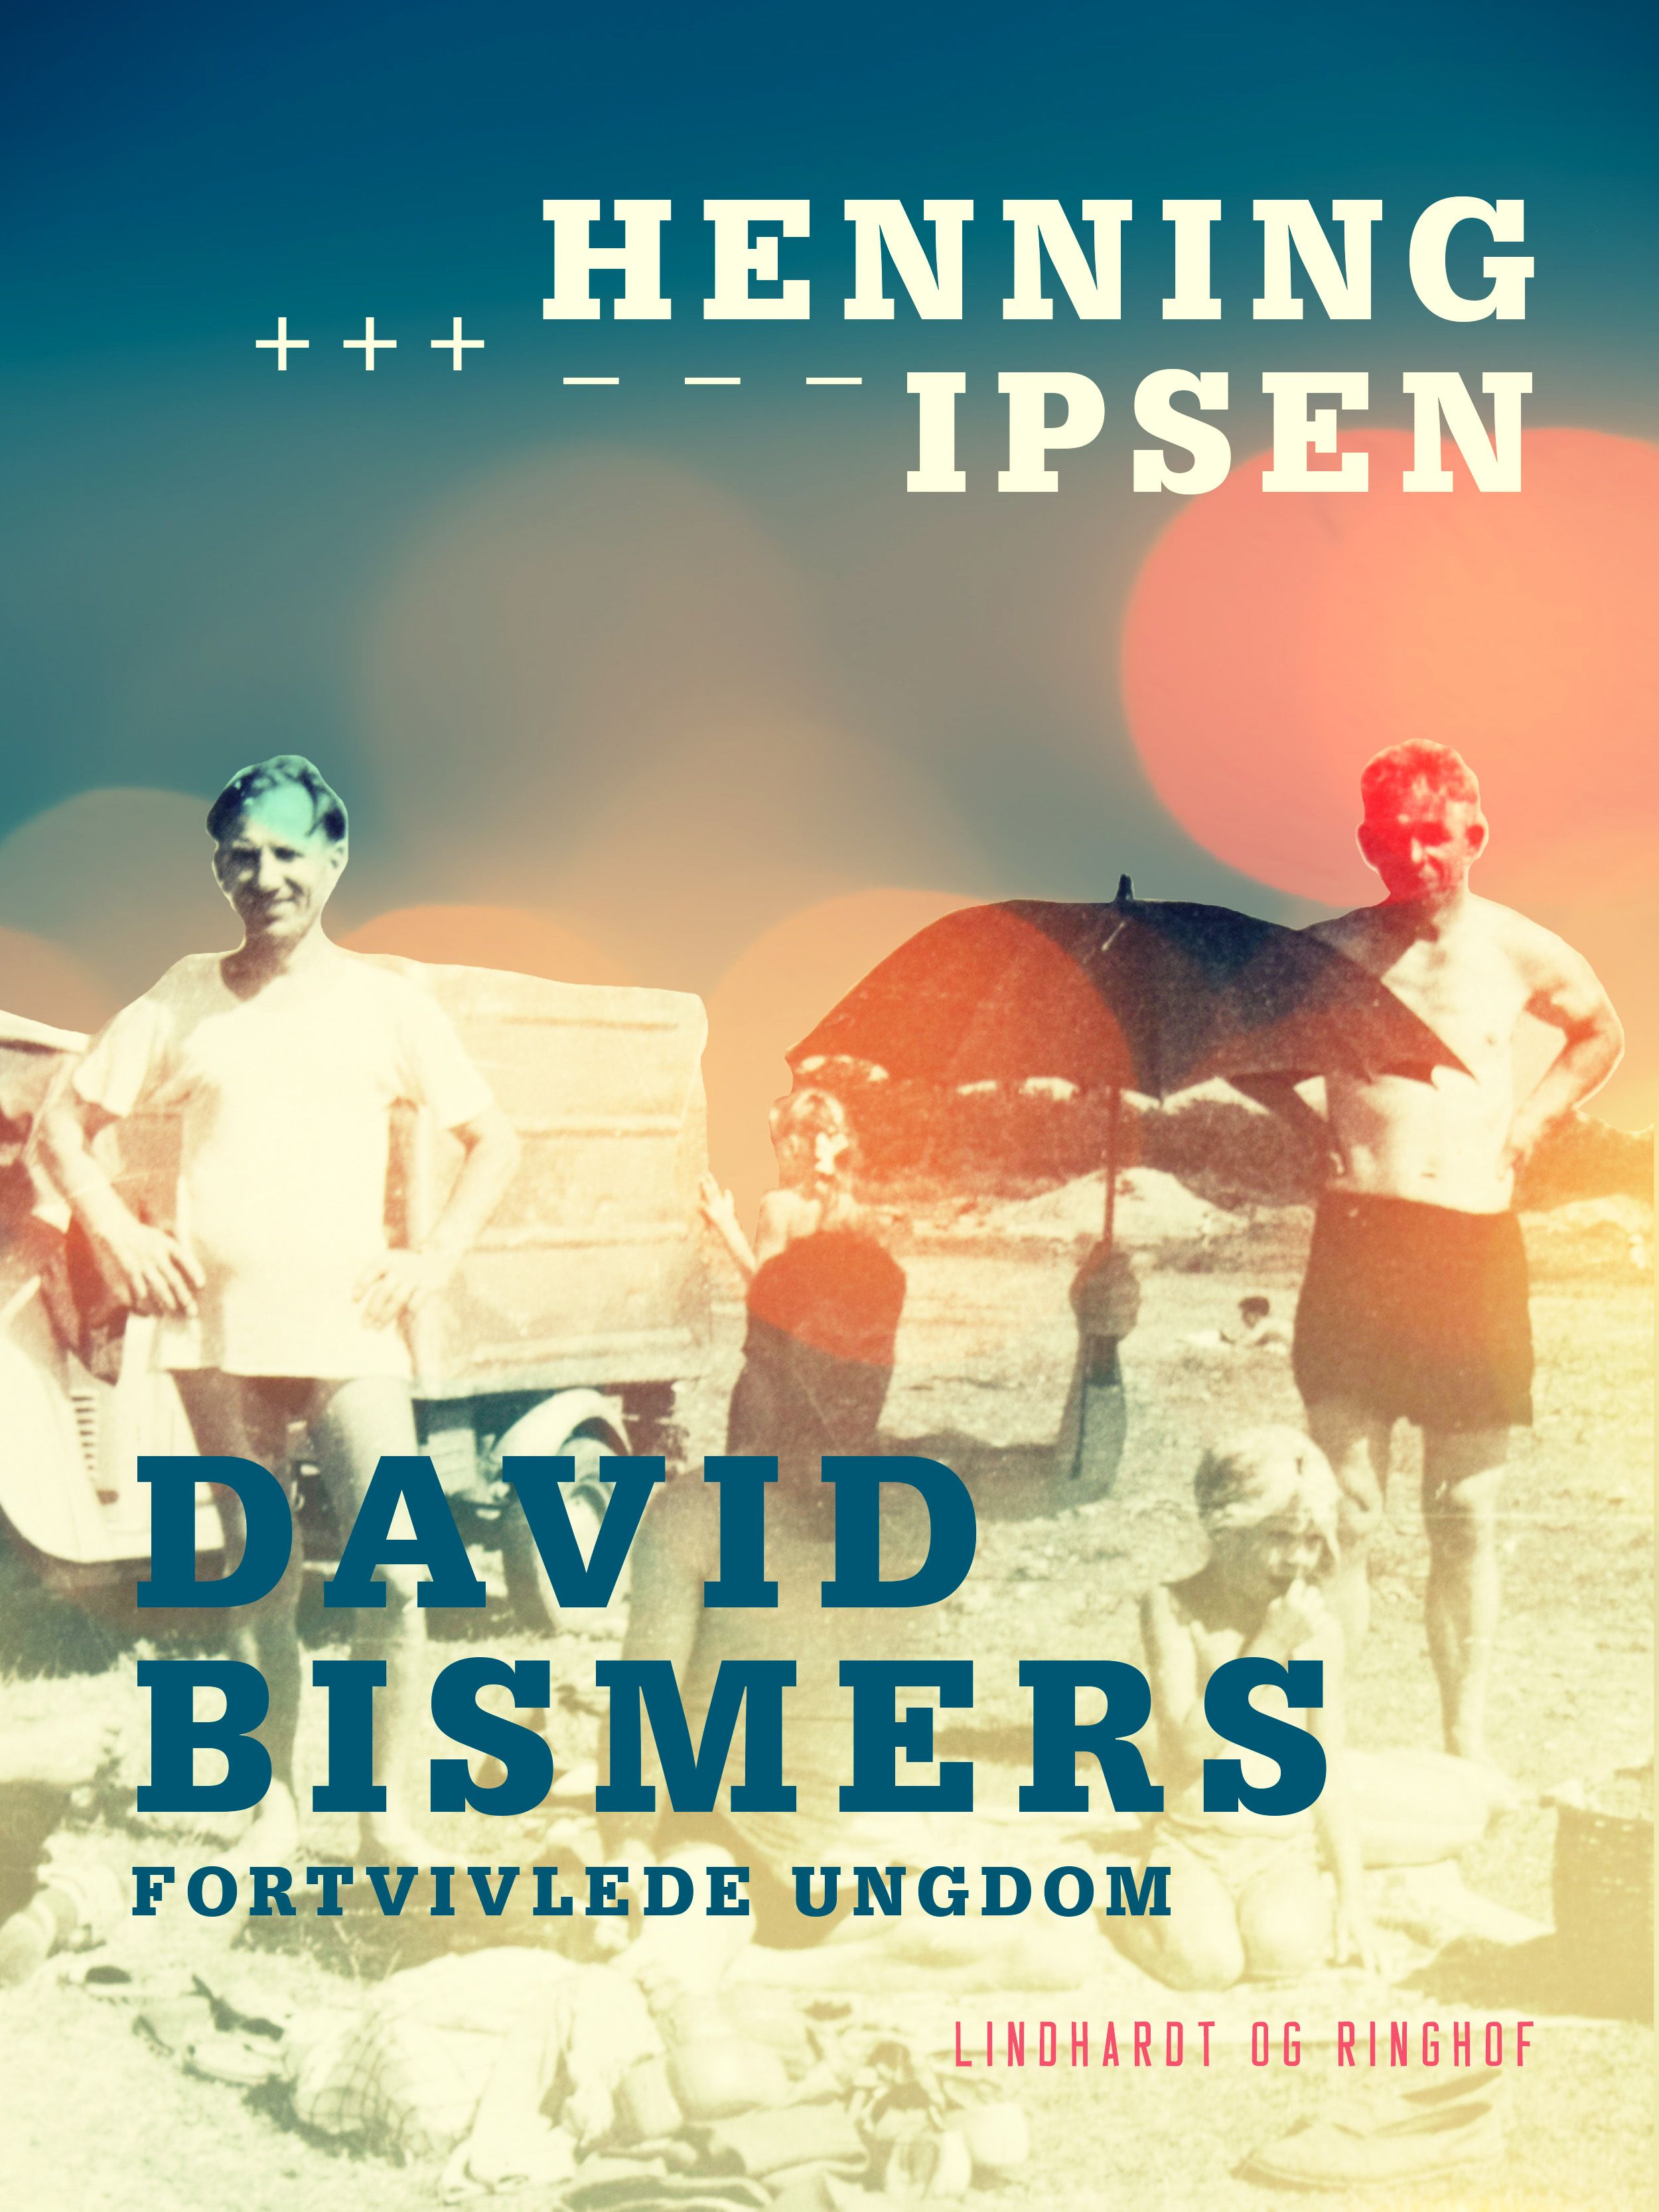 David Bismers fortvivlede ungdom, e-bog af Henning Ipsen